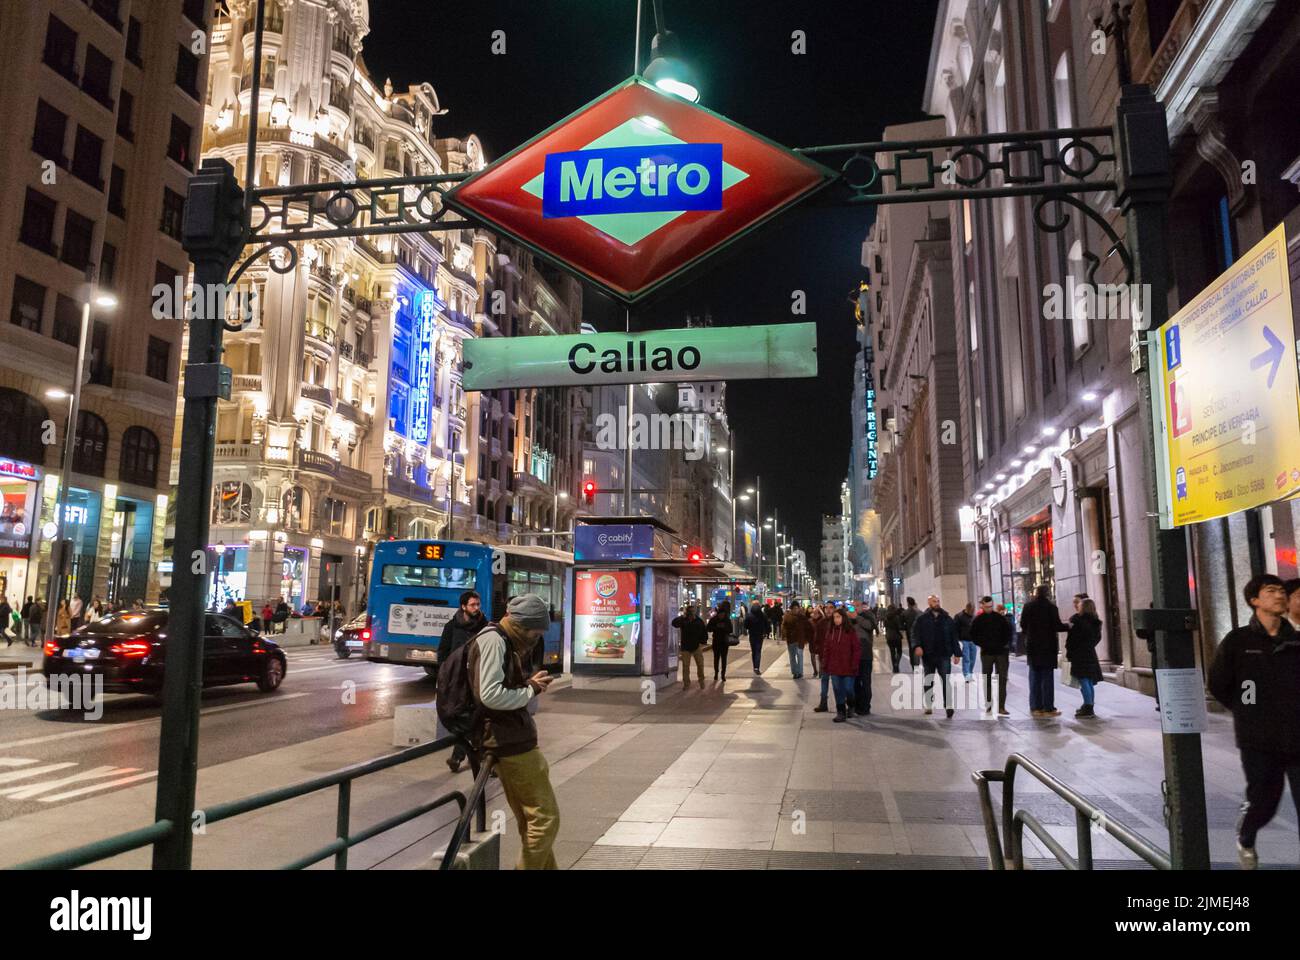 Madrid, España, Escena, gente de muchedumbre, turistas, Fuera del metro, metro, señal, escena de la calle, luces nocturnas Foto de stock